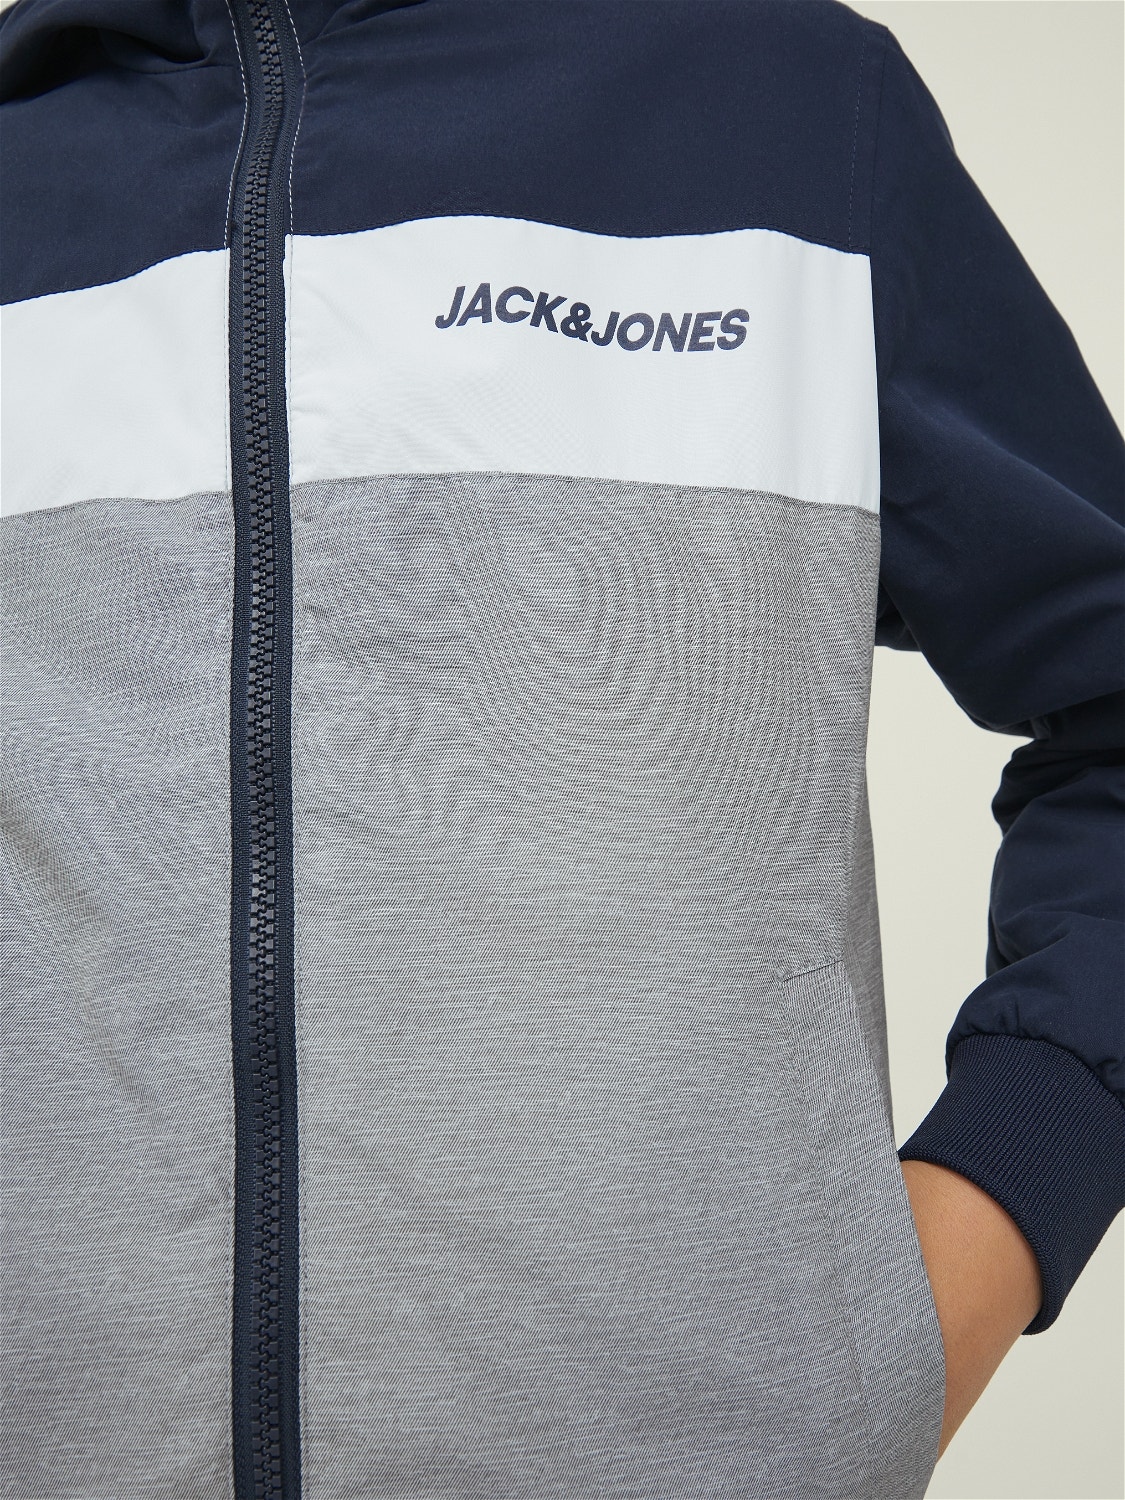 Jack & Jones Softshell Jacke Für jungs -Navy Blazer - 12200453